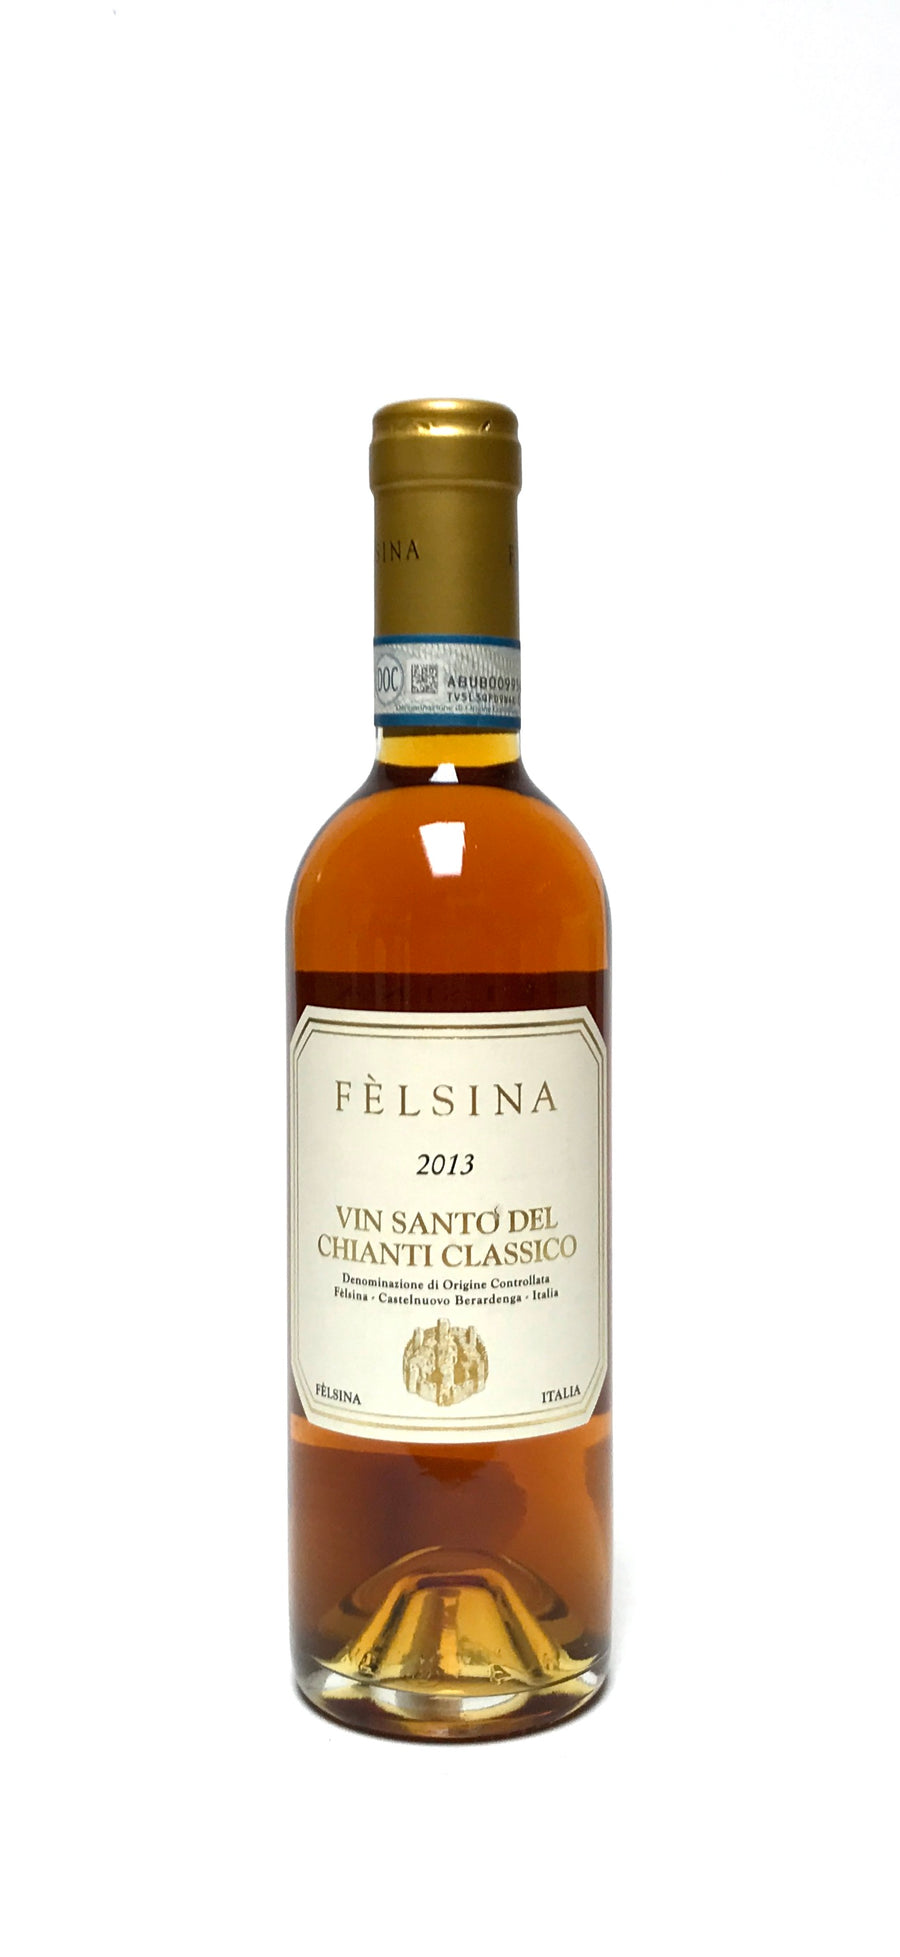 Fèlsina 2013 Vin Santo del Chianti Classico 375ml (half-bottle)